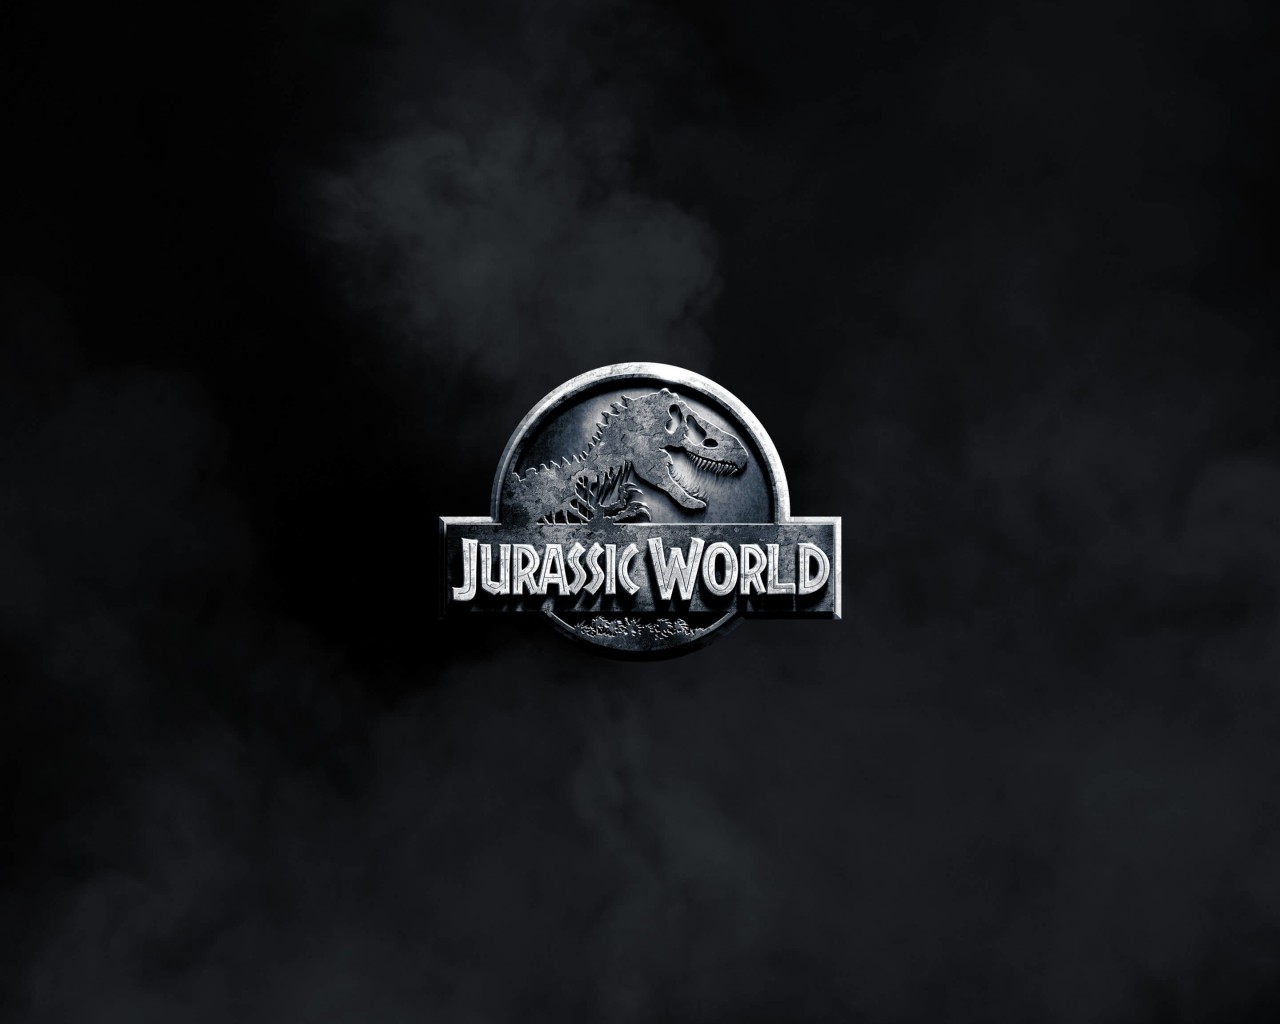 Jurassic World Wallpaper for Desktop 1280x1024